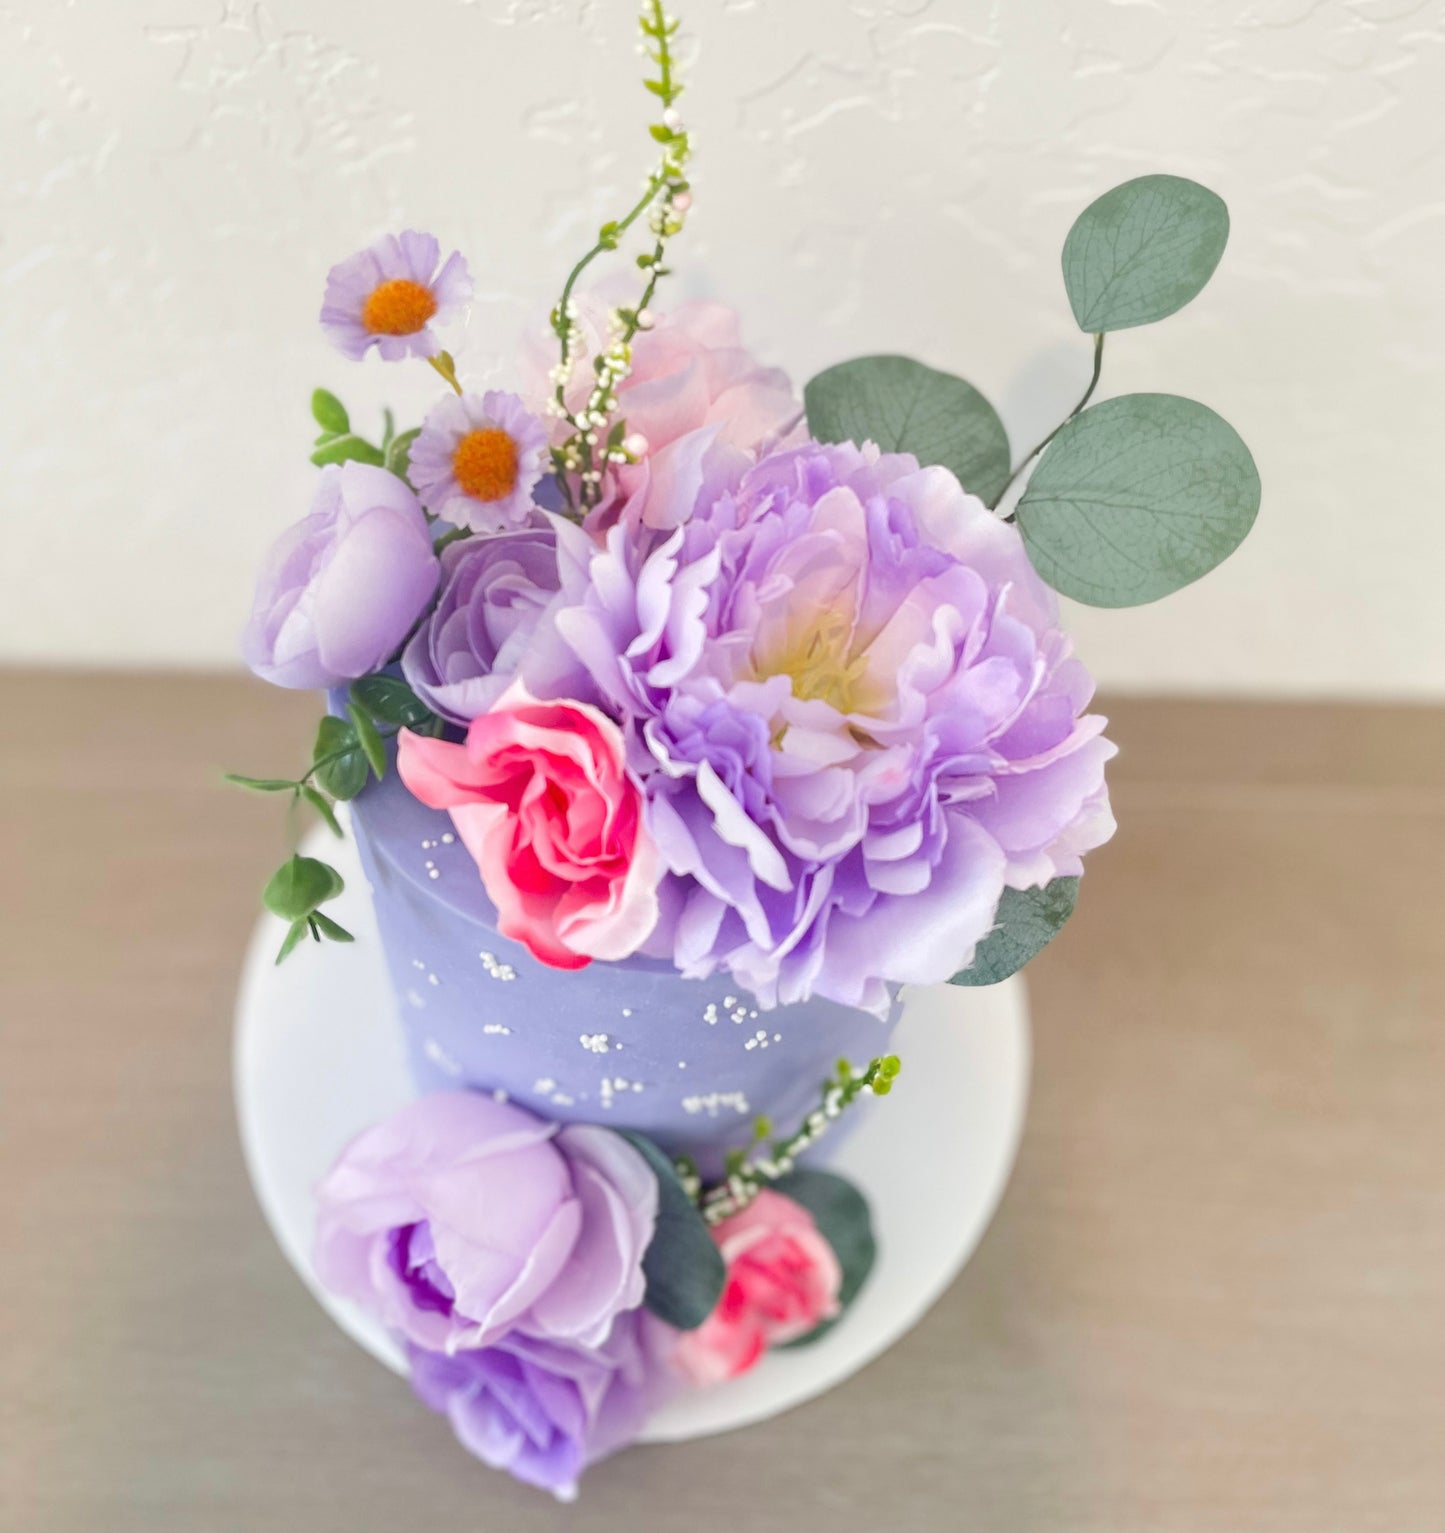 Purple Cake